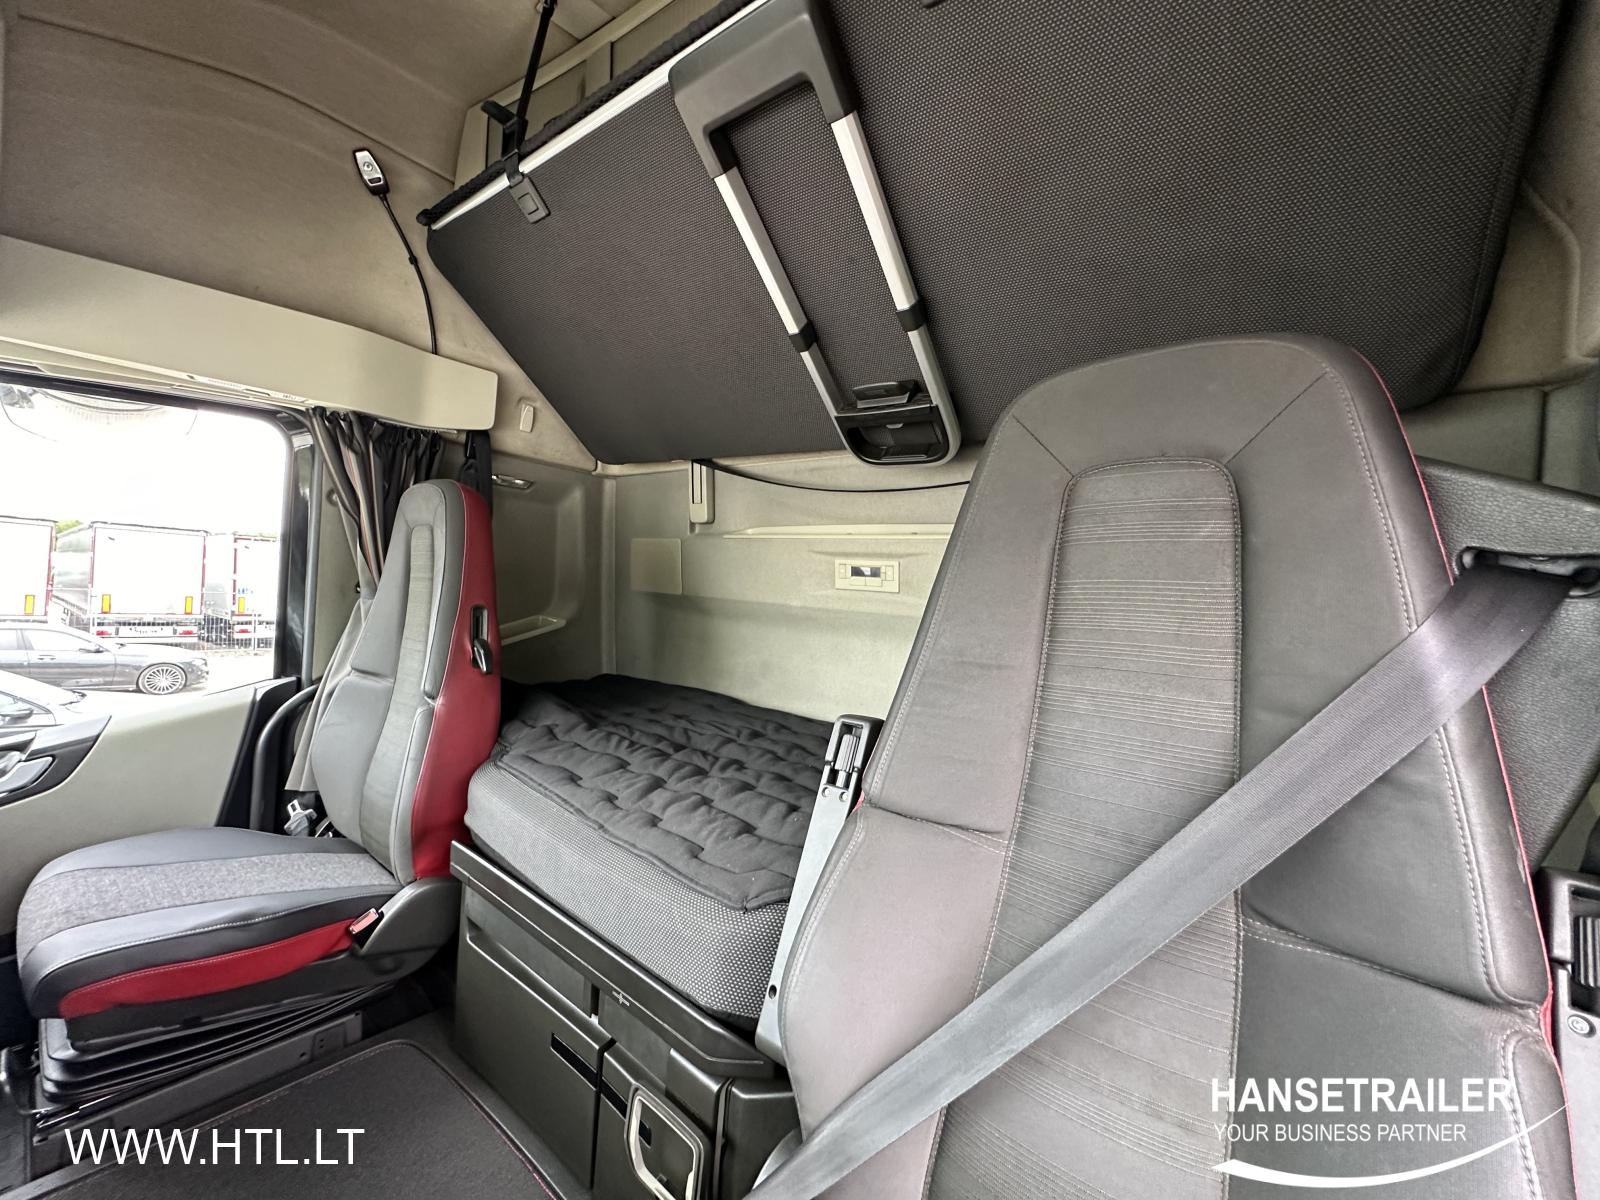 2019 Kuormaauto 4x2 Volvo FH Chassis KB XL FH500 VEB+